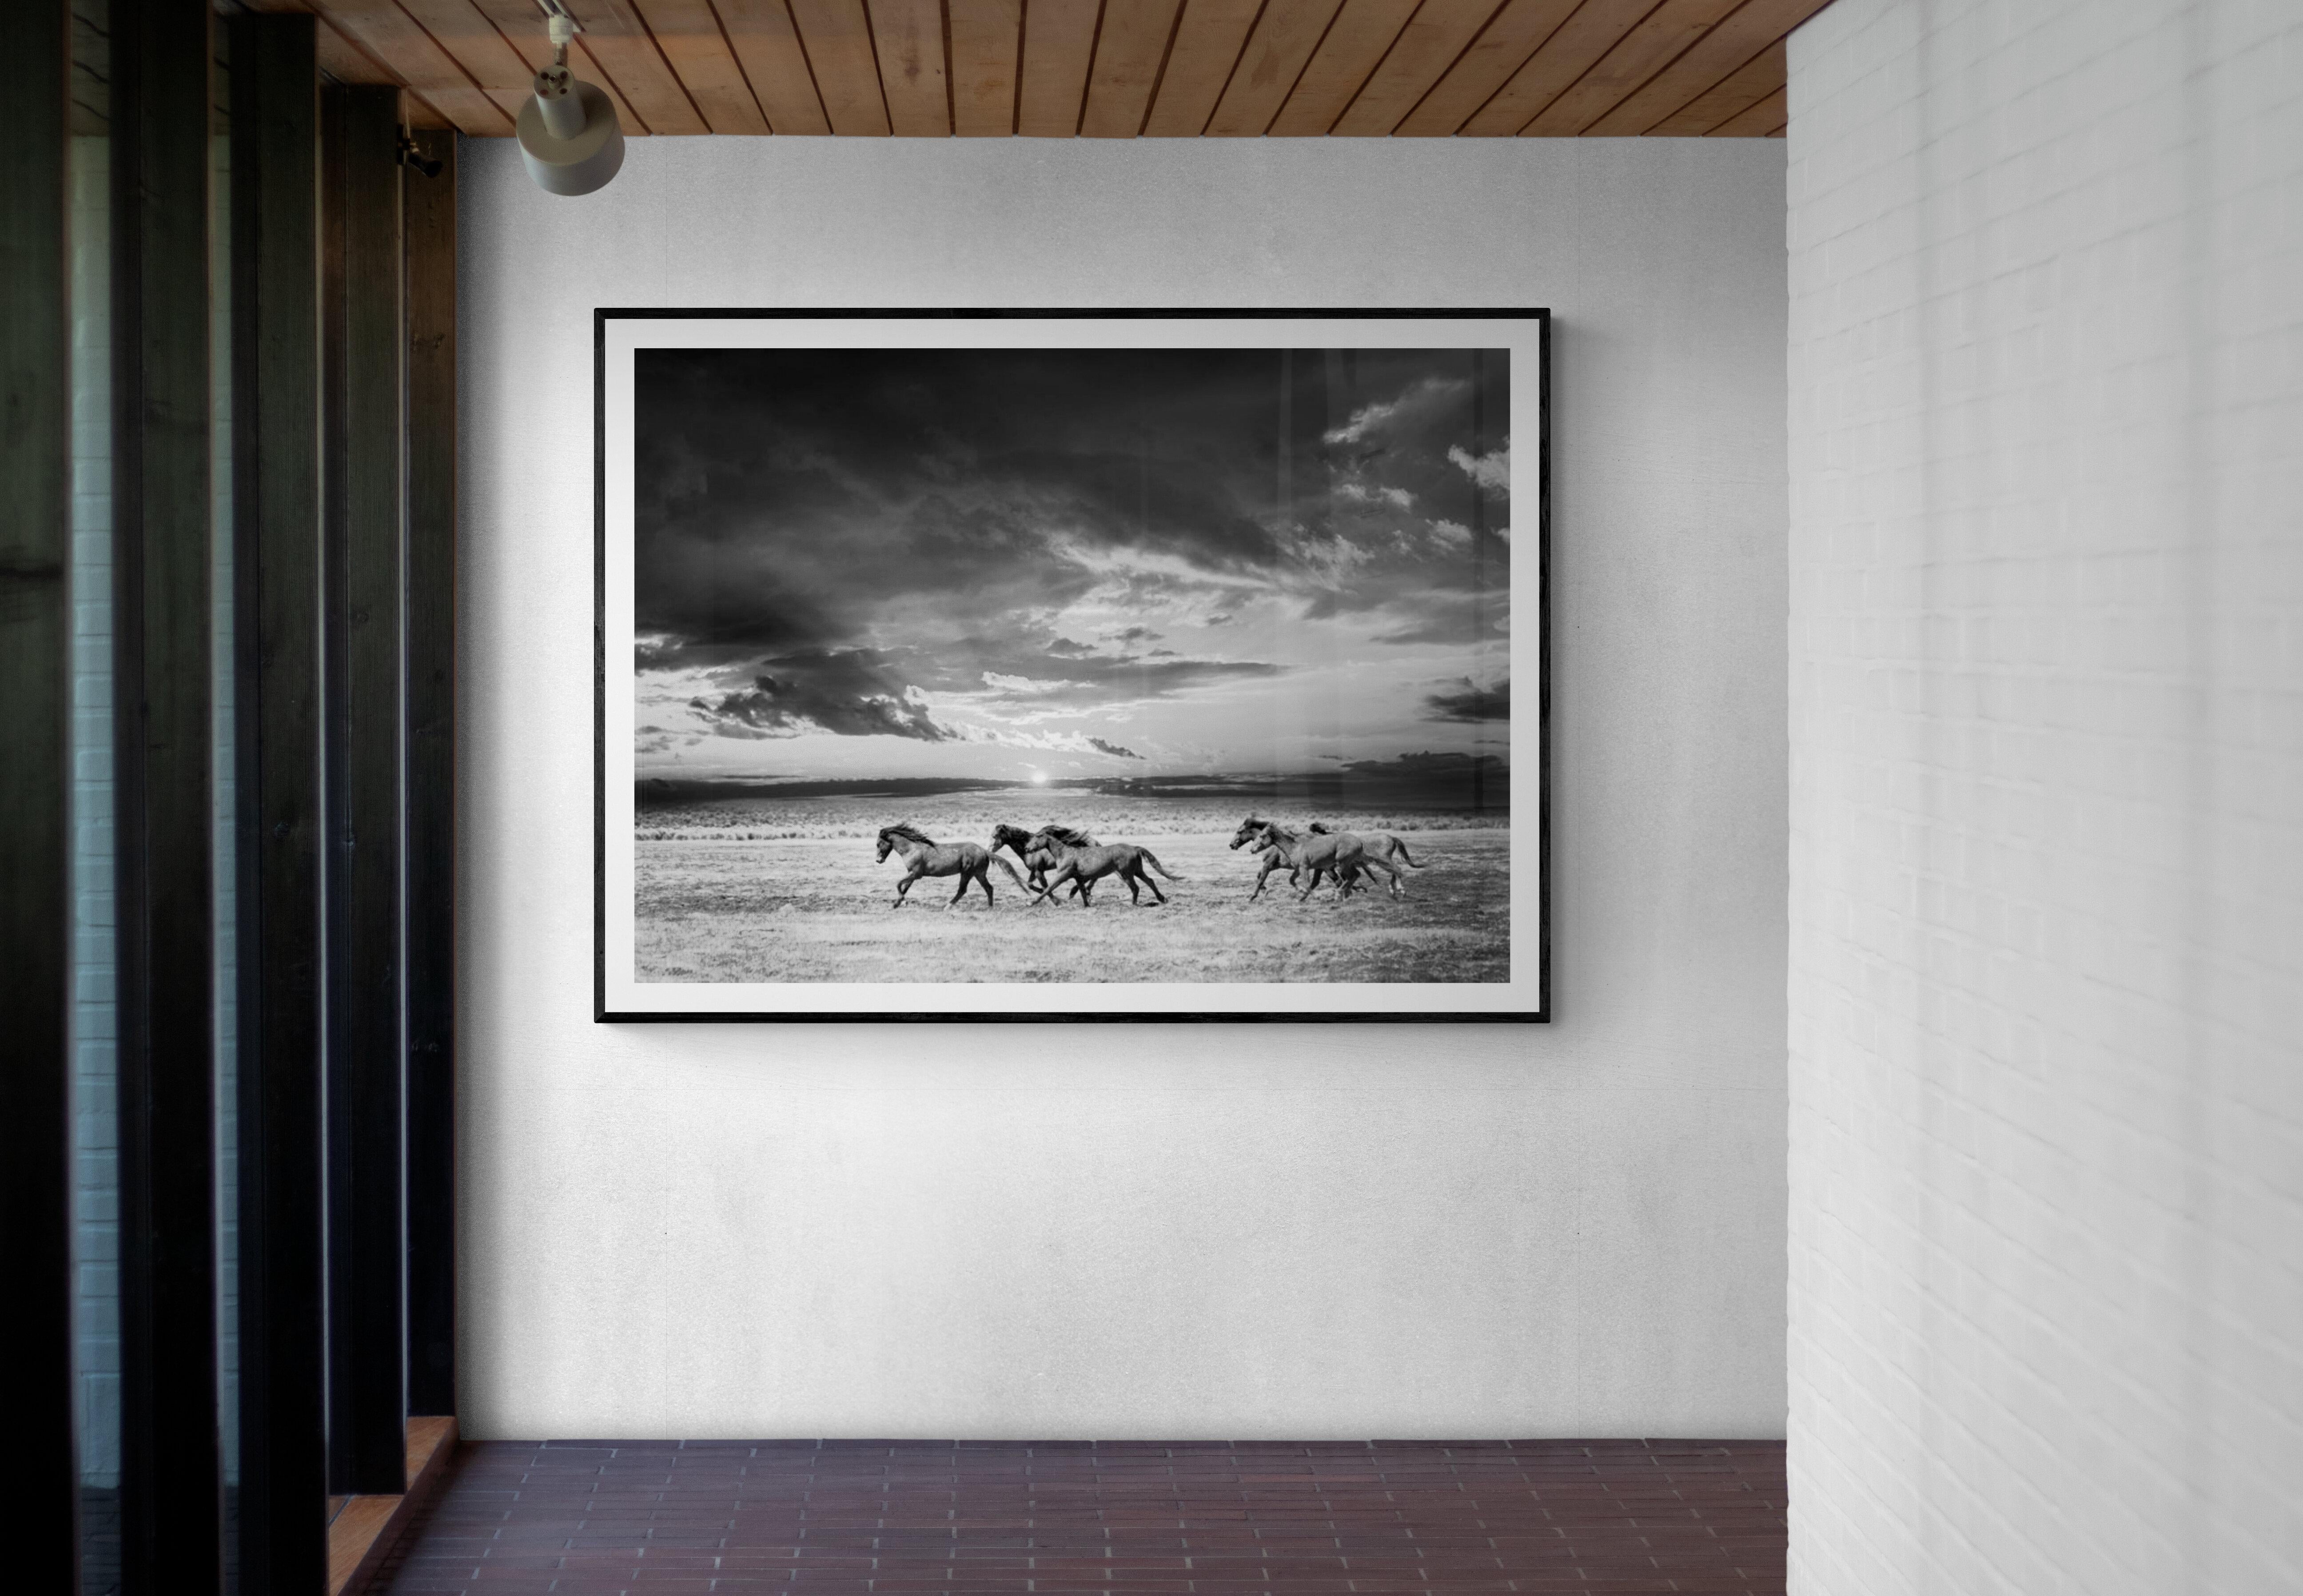 Chasing the Light- 60x40 Schwarz-Weiß-Fotografie mit Wildpferden, Senf, unsigniert 3